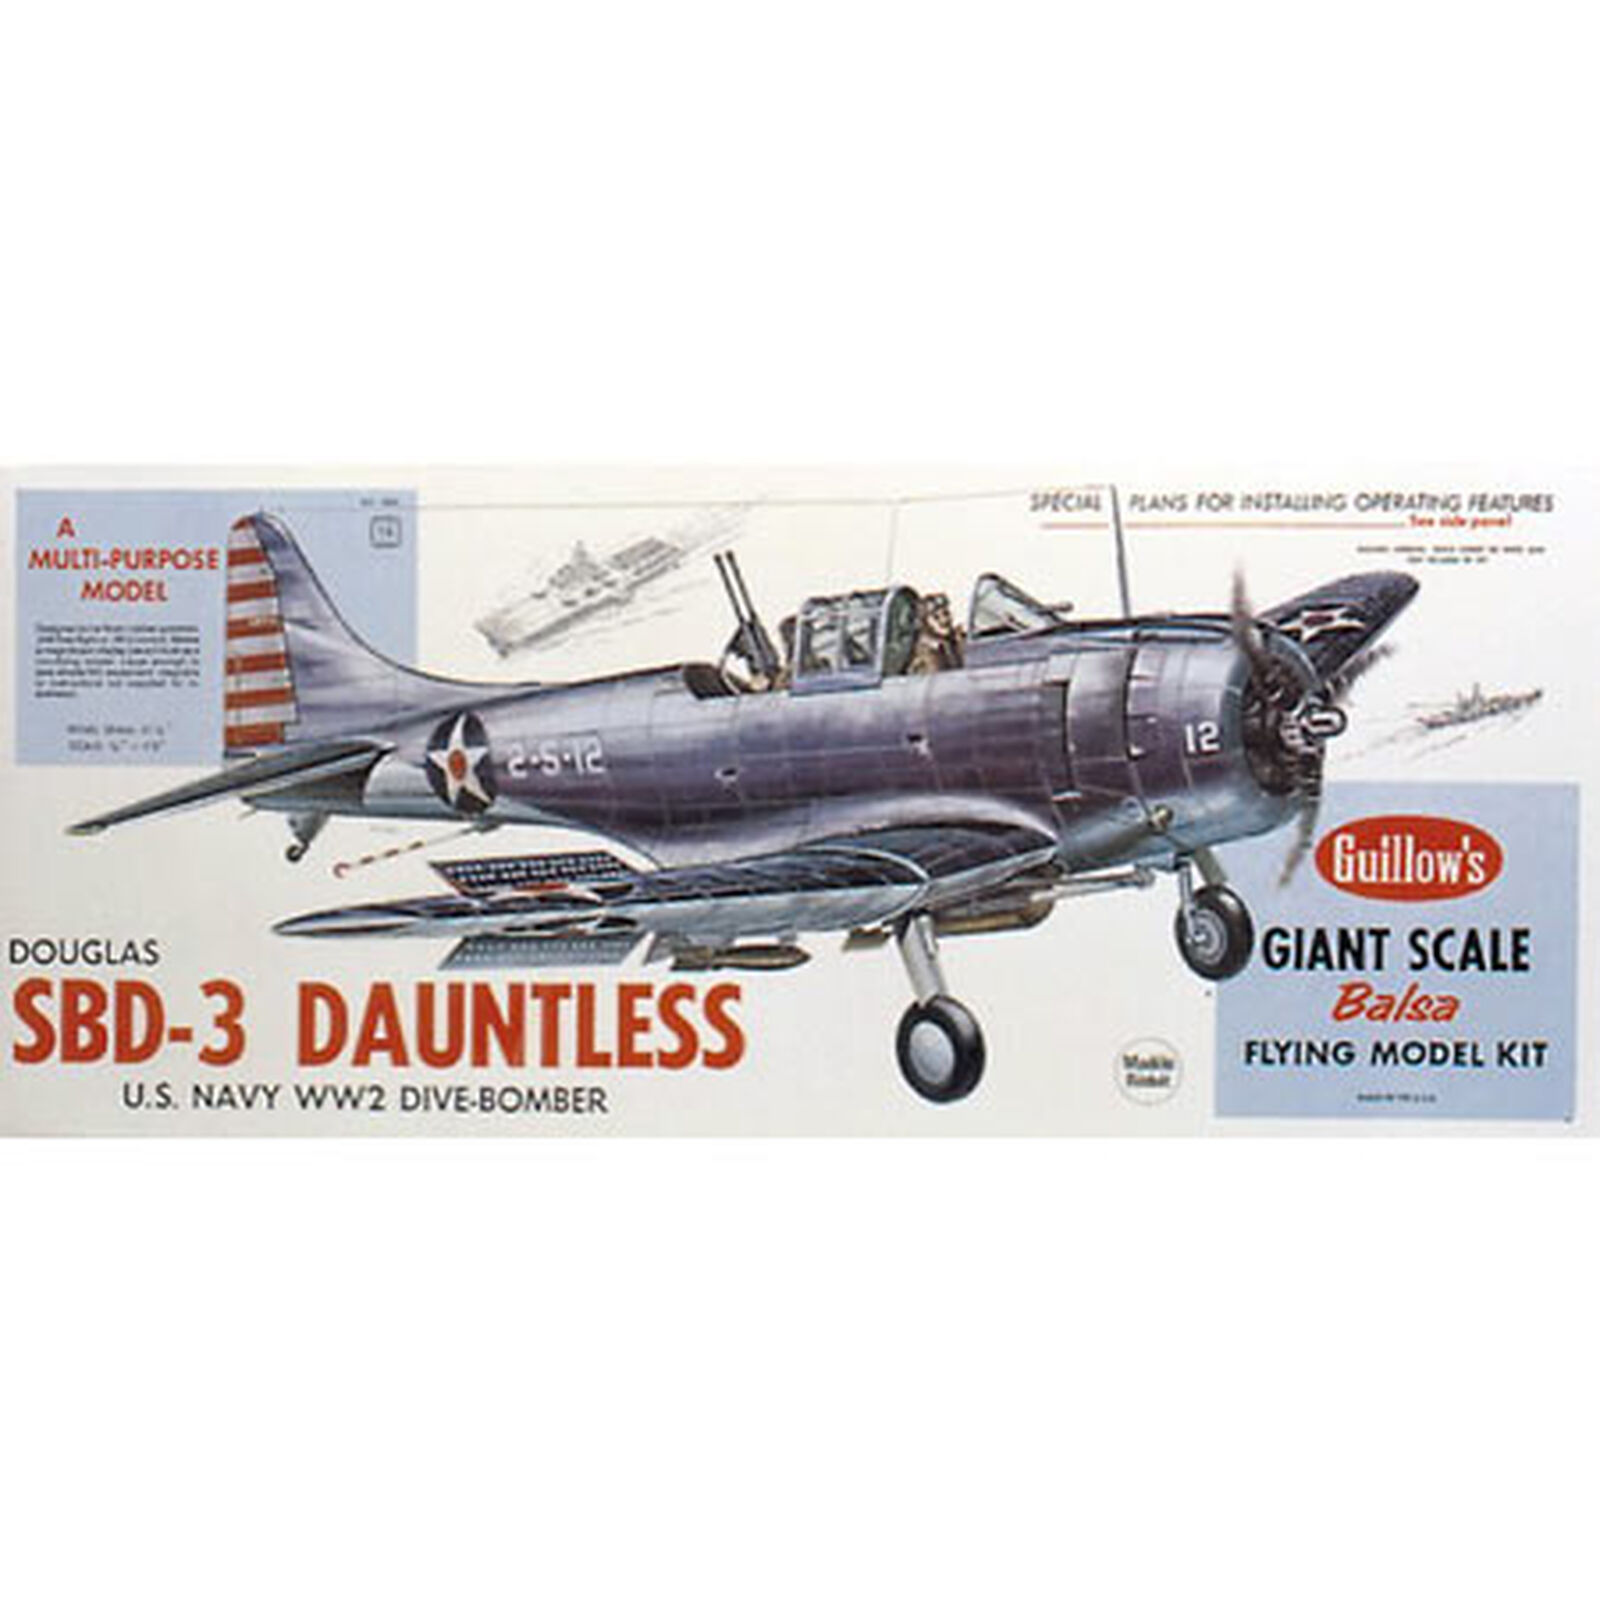 Douglas SBD-3 Dauntless Kit, 31"